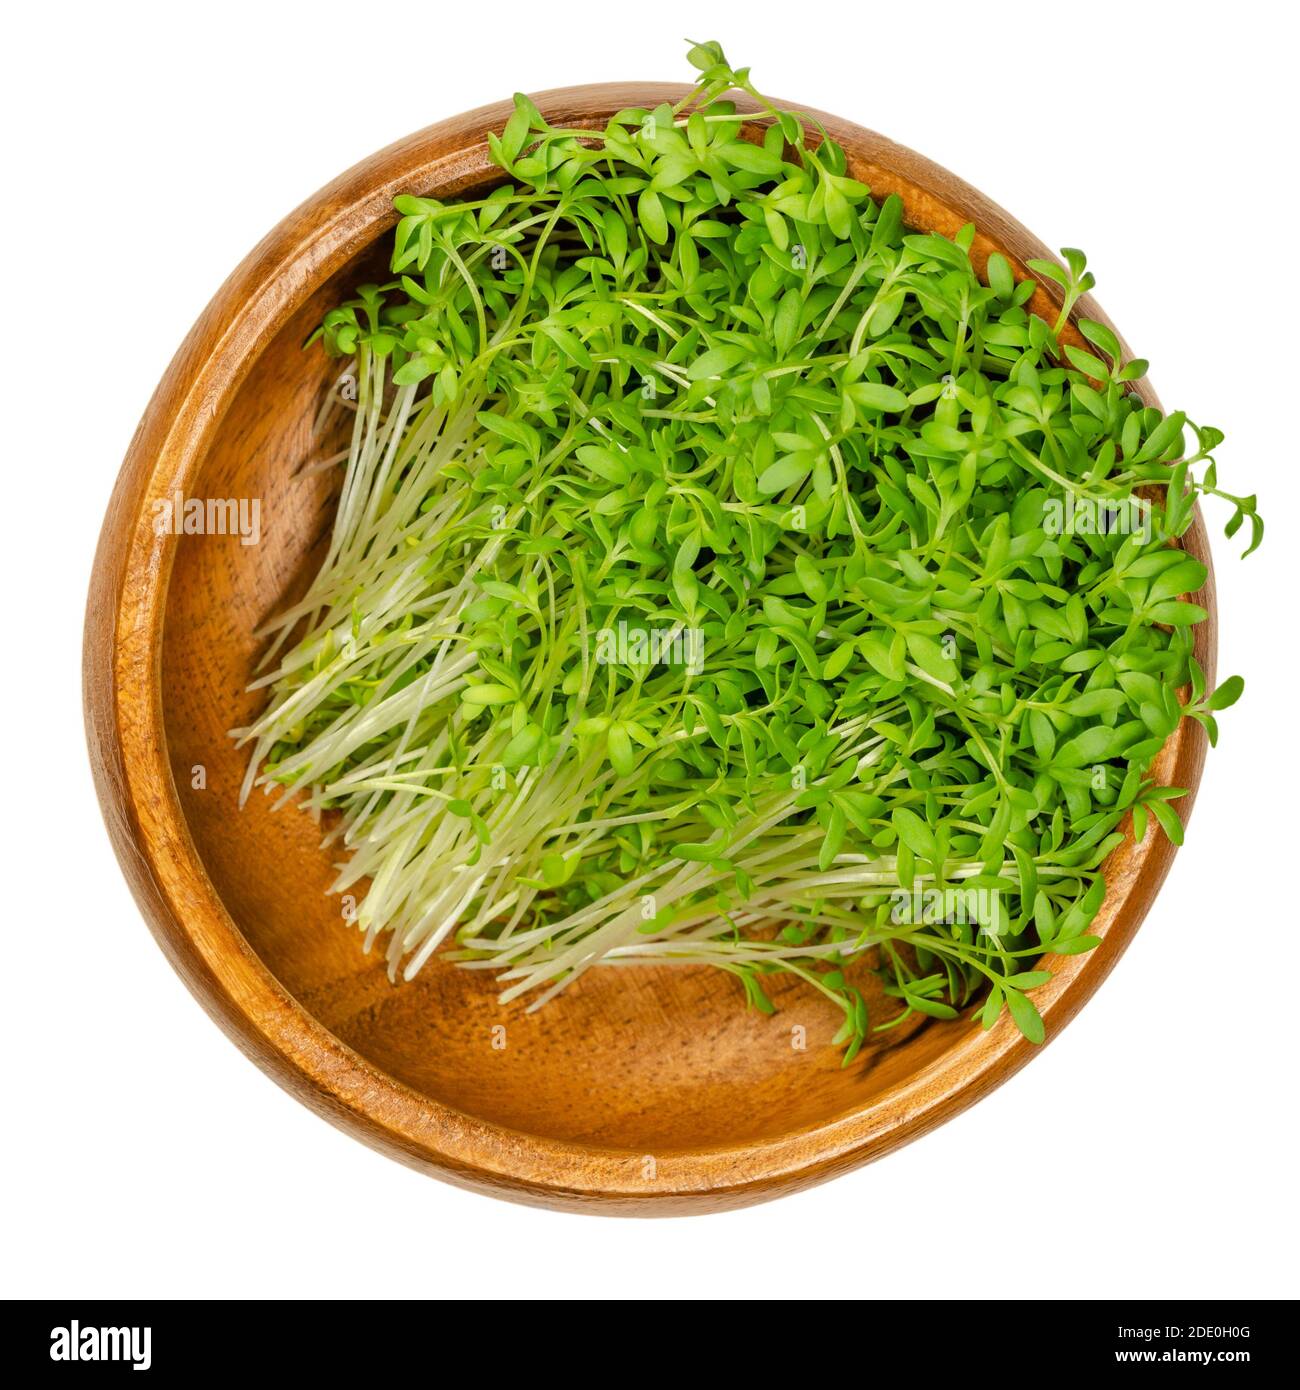 Le cresson de jardin s'élance dans un bol en bois. Cresson, peppermoort ou peppergrass. Plantules vertes et jeunes plantes de Lepidium sativum, un microvert sain. Banque D'Images